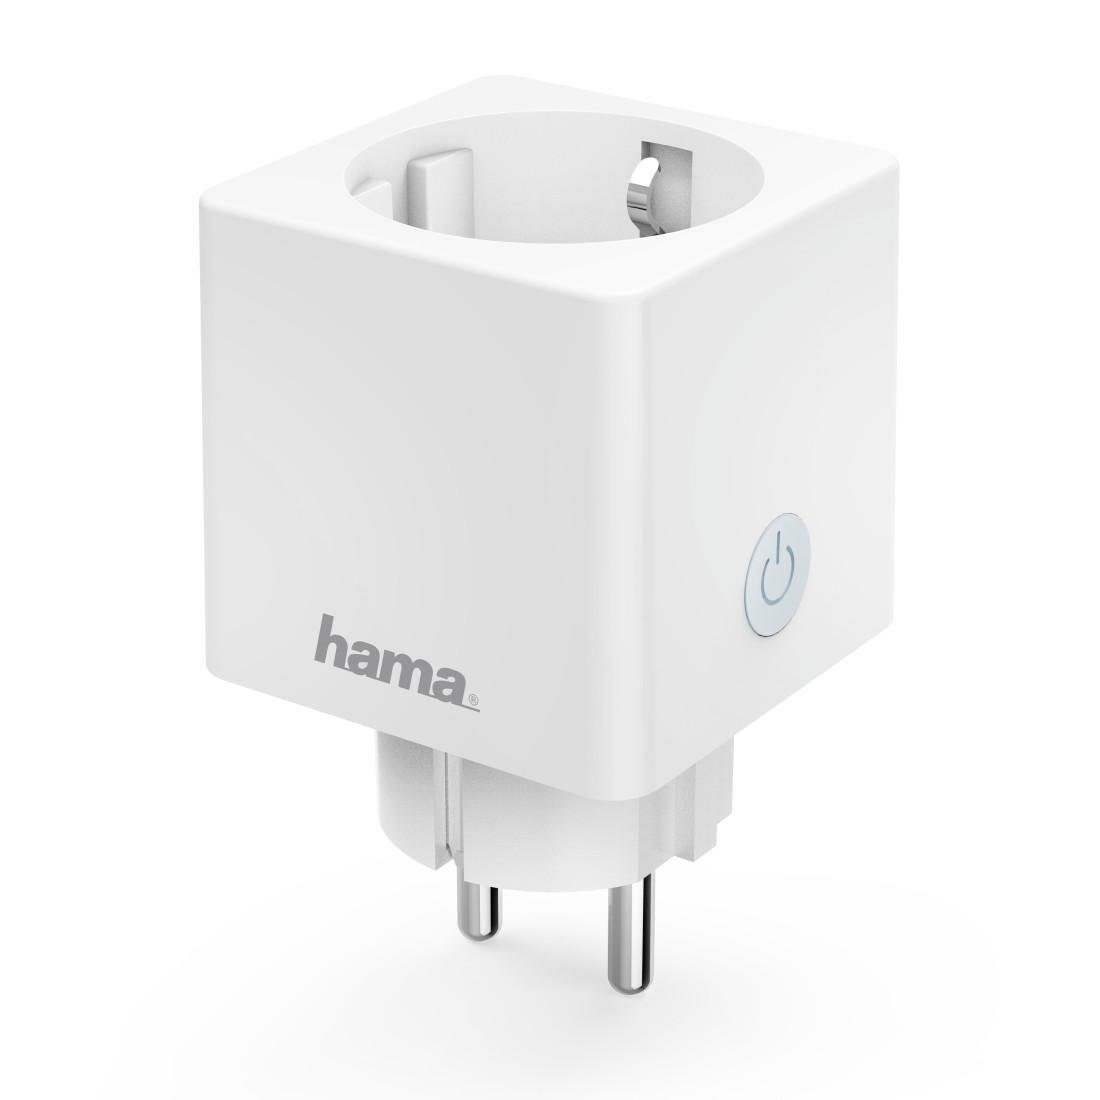 Hama WLAN-Steckdose WLAN Hub ohne Steckdose Sprachsteuerung max. 3680W, W, weiß, Mini für 3680 App-und